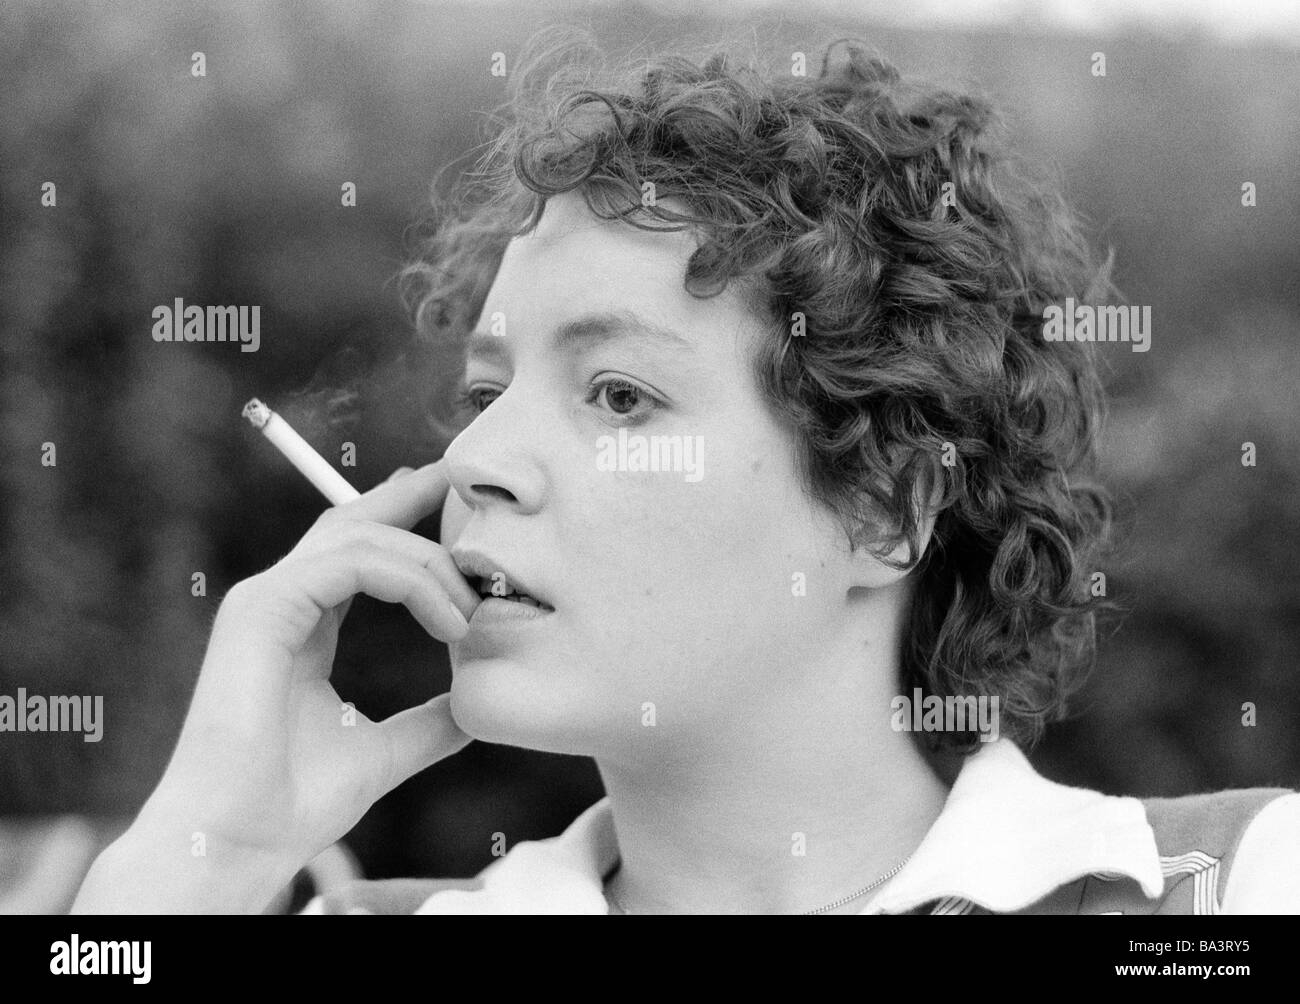 70, fotografía en blanco y negro, gente joven sostiene un cigarrillo en su mano, retrato, de 23 años de edad a 28 años, Monika Foto de stock